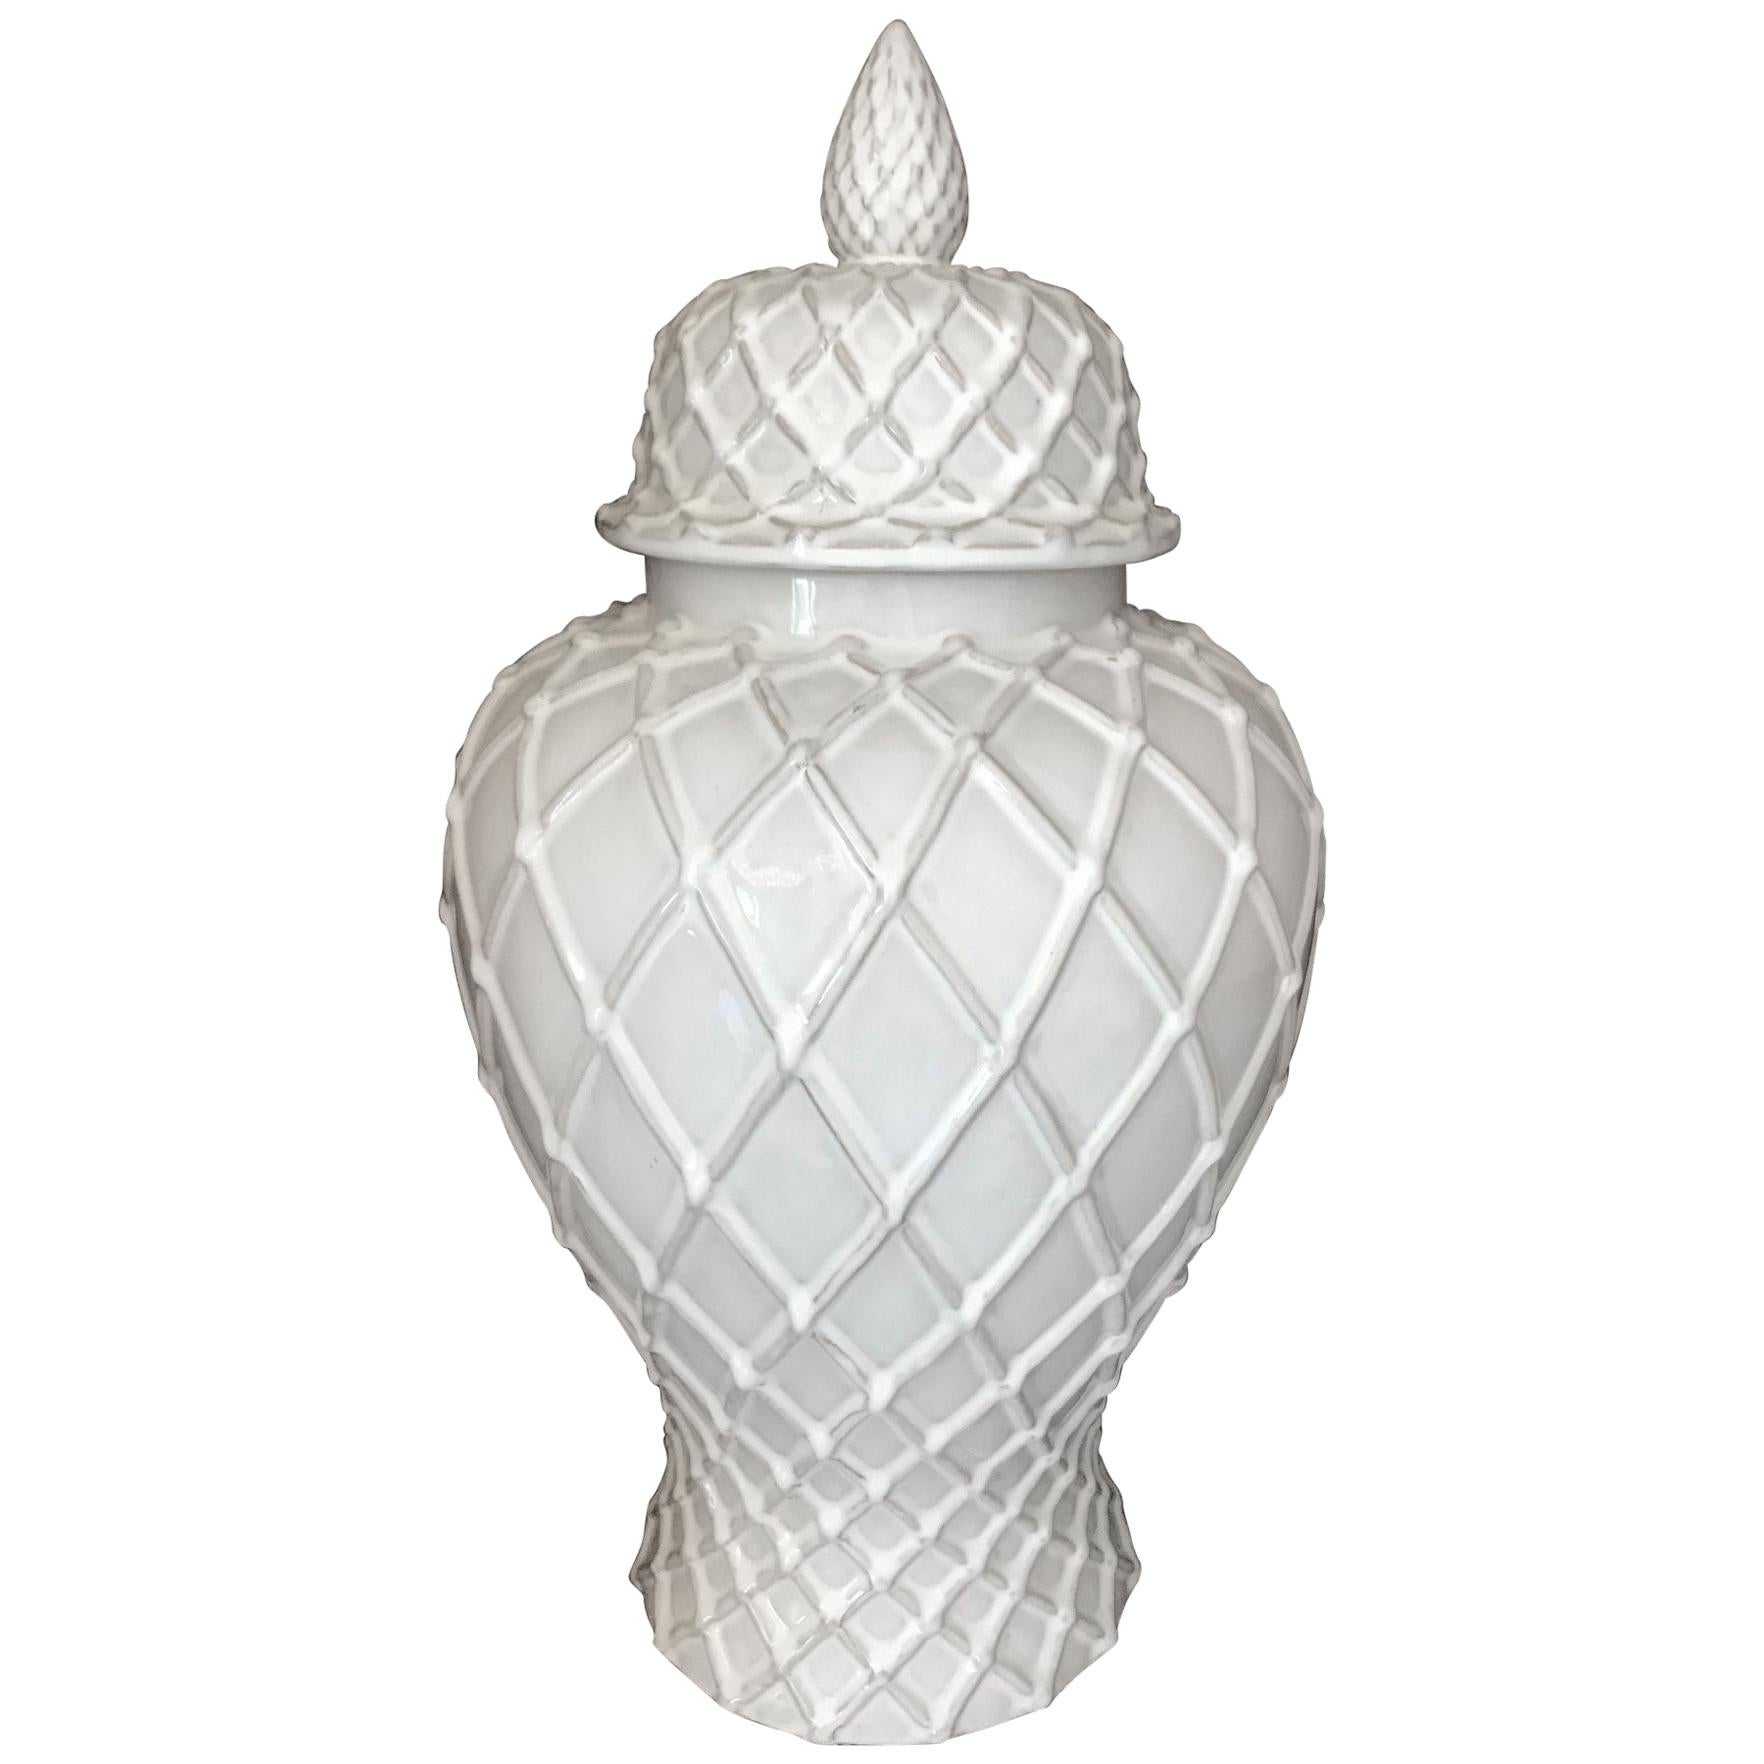 Exquisite White Ceramic Lidded Urn Vase with Lattice Design, Italy